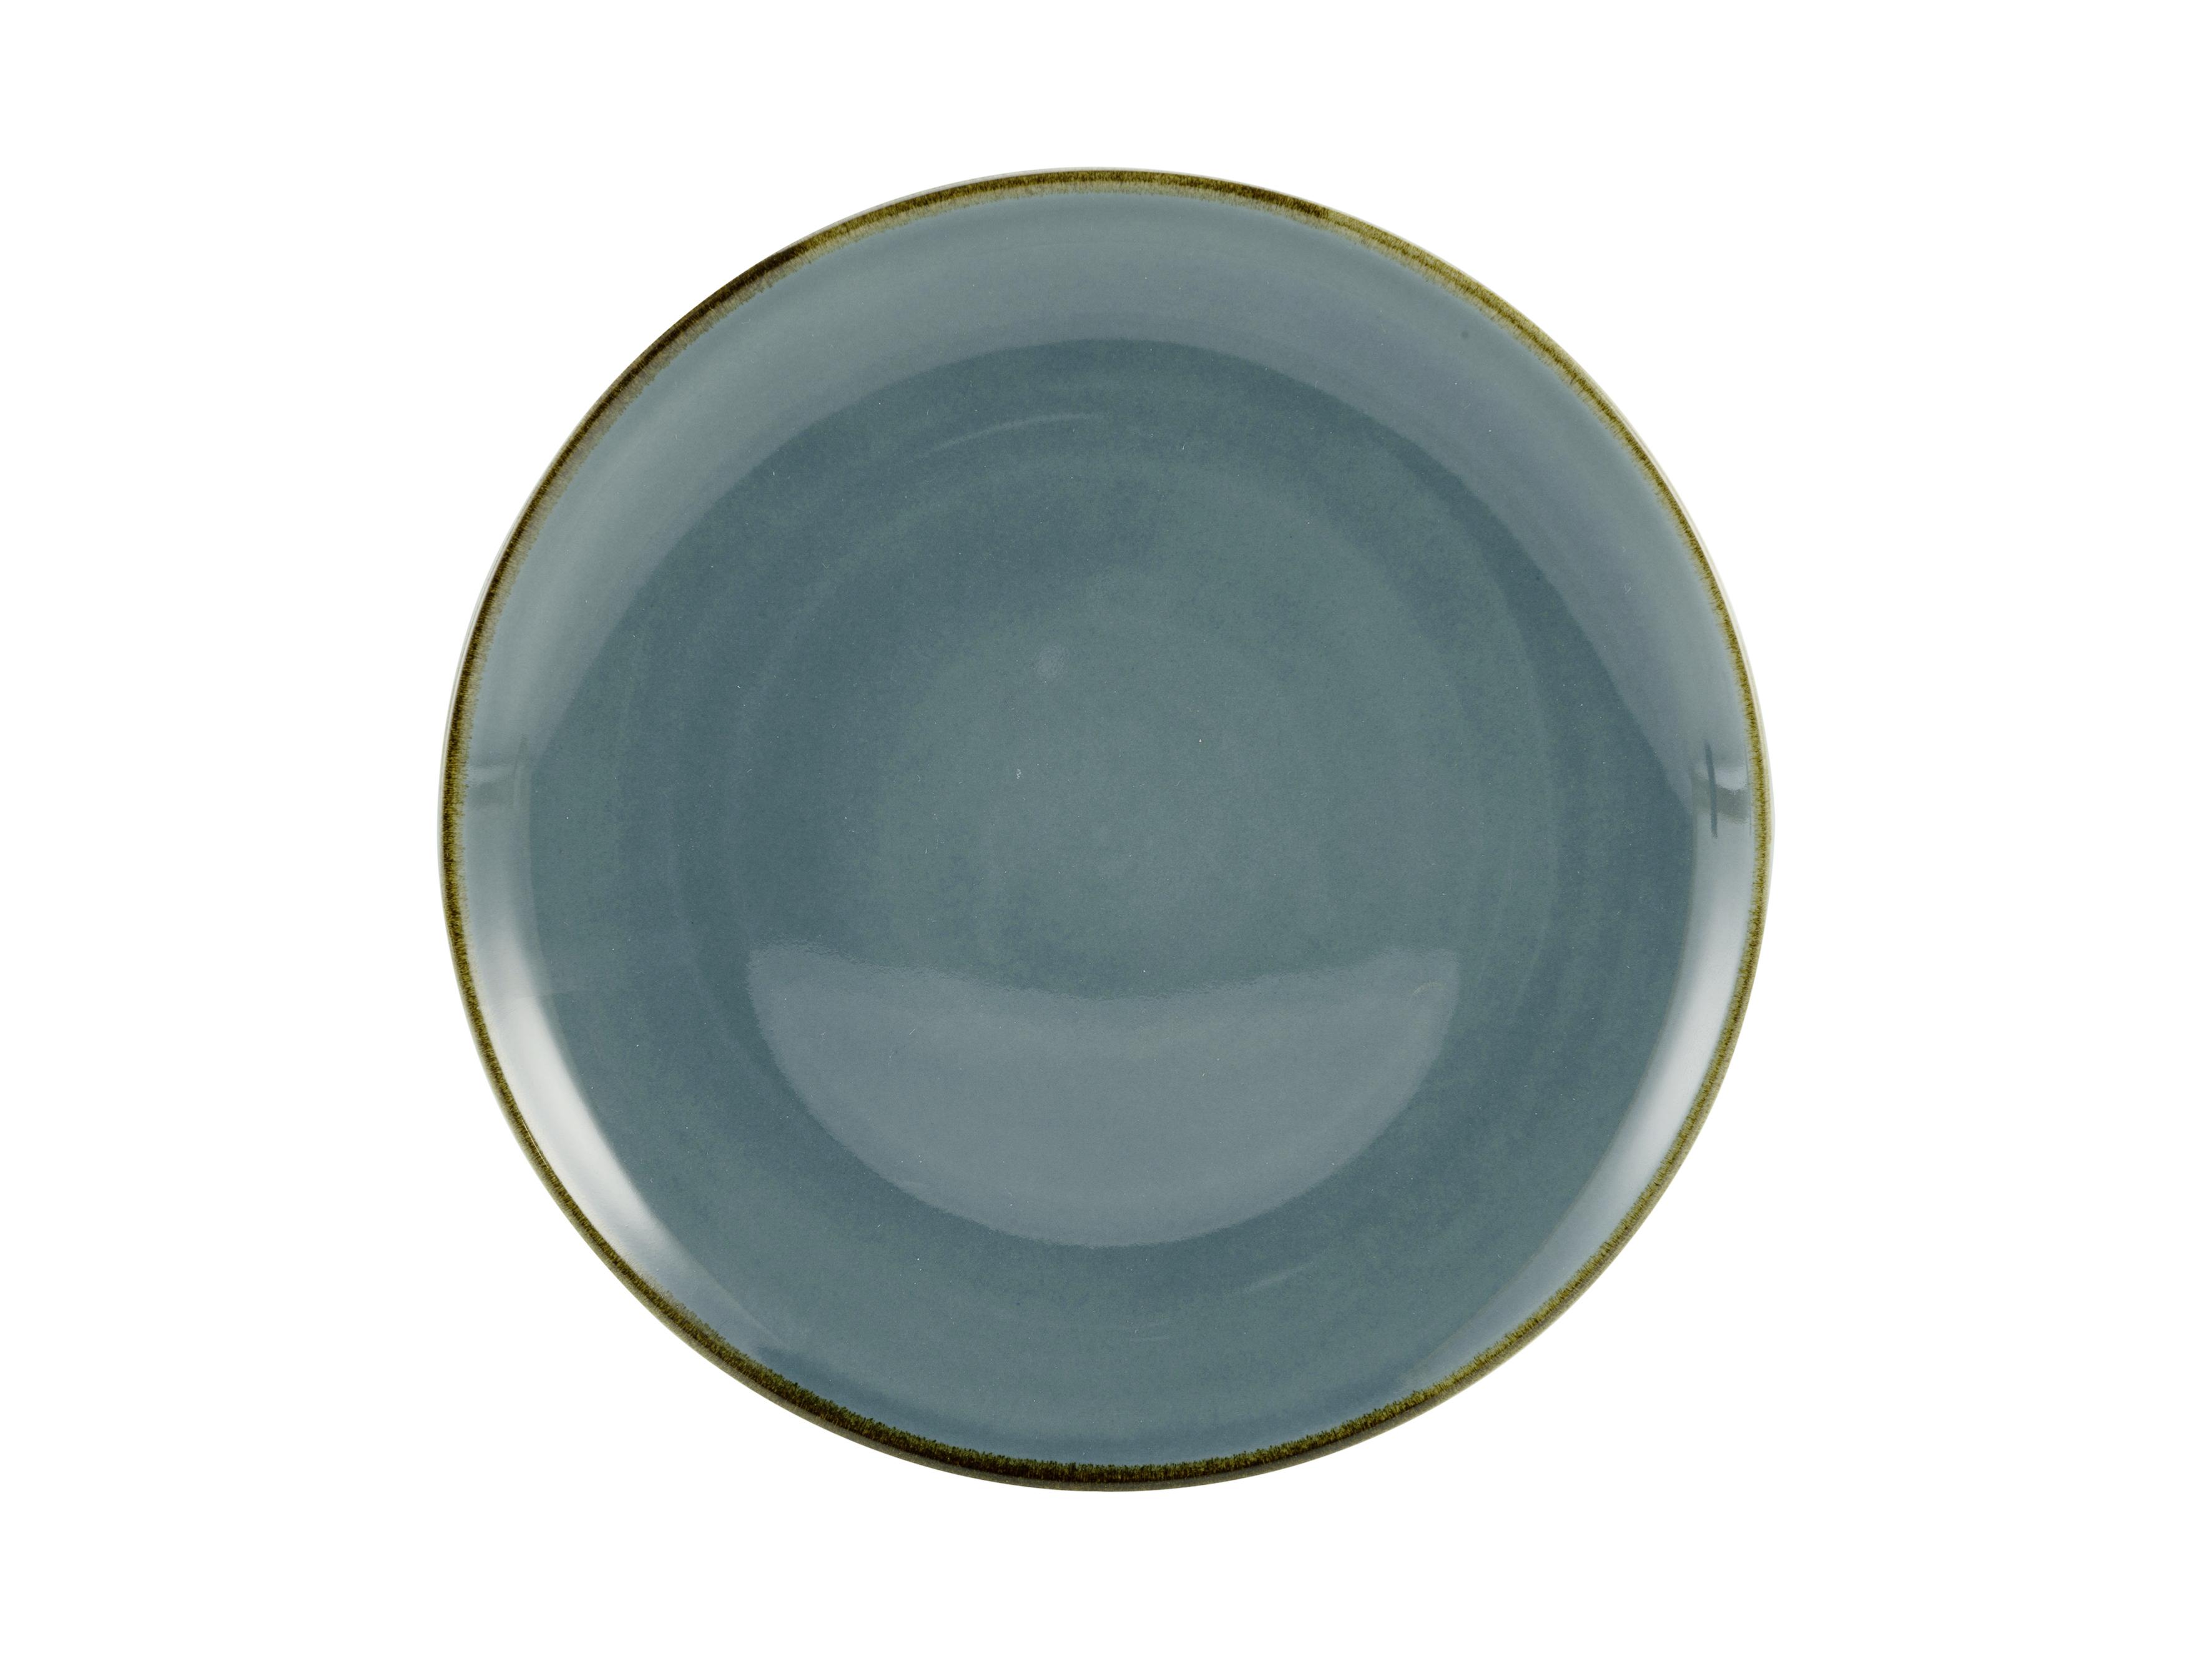 DESERTNI TANJUR LINEN - plava, keramika (22/22/2,5cm) - Premium Living